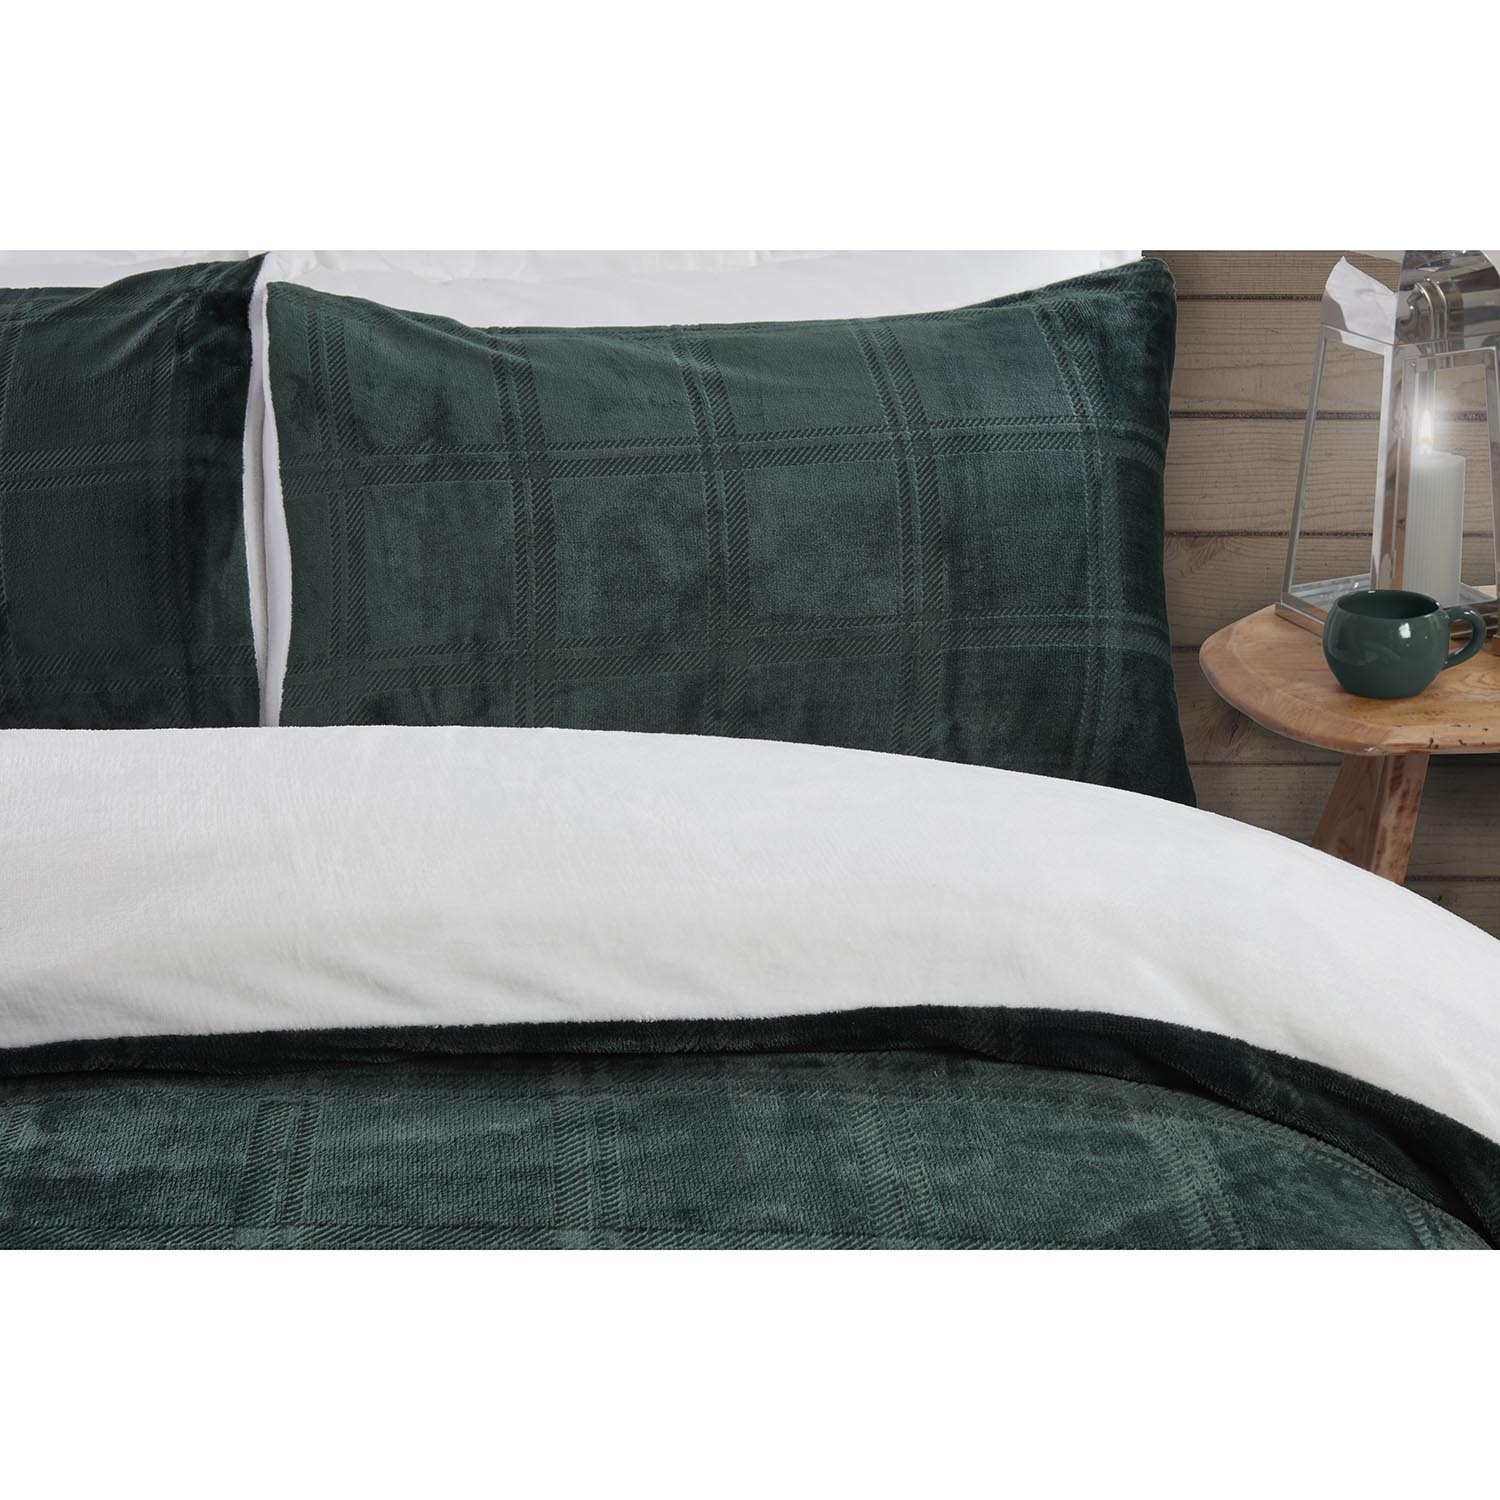 Halston King Size Green Check Fleece Duvet Cover and Pillowcase Set Image 4